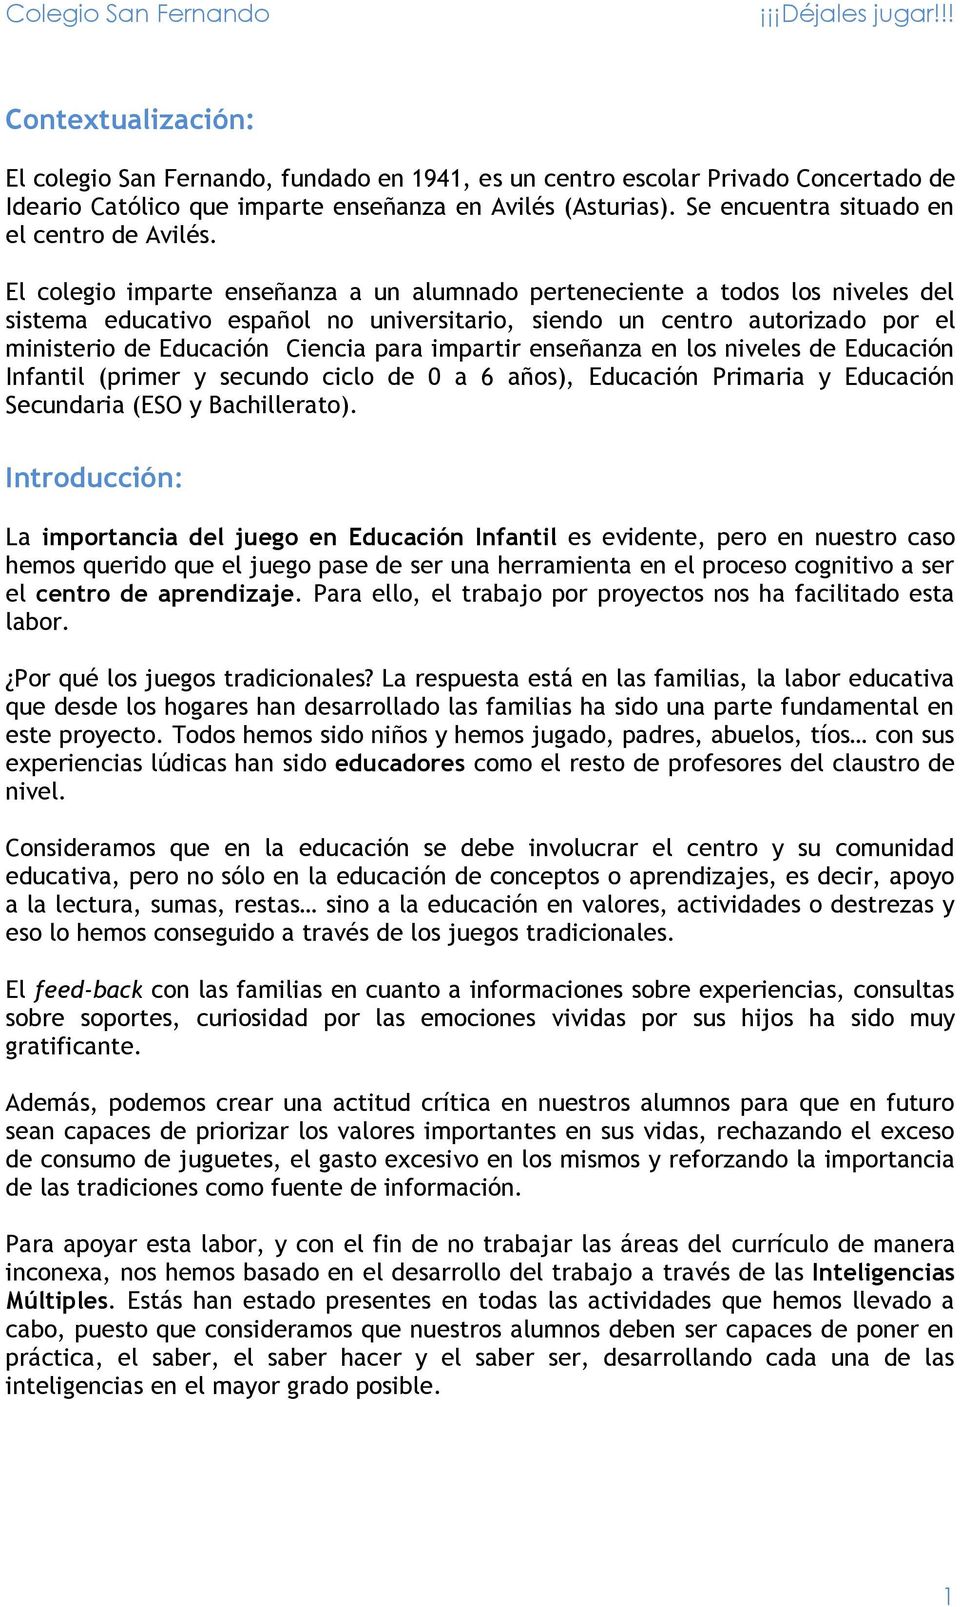 El colegio imparte enseñanza a un alumnado perteneciente a todos los niveles del sistema educativo español no universitario, siendo un centro autorizado por el ministerio de Educación Ciencia para